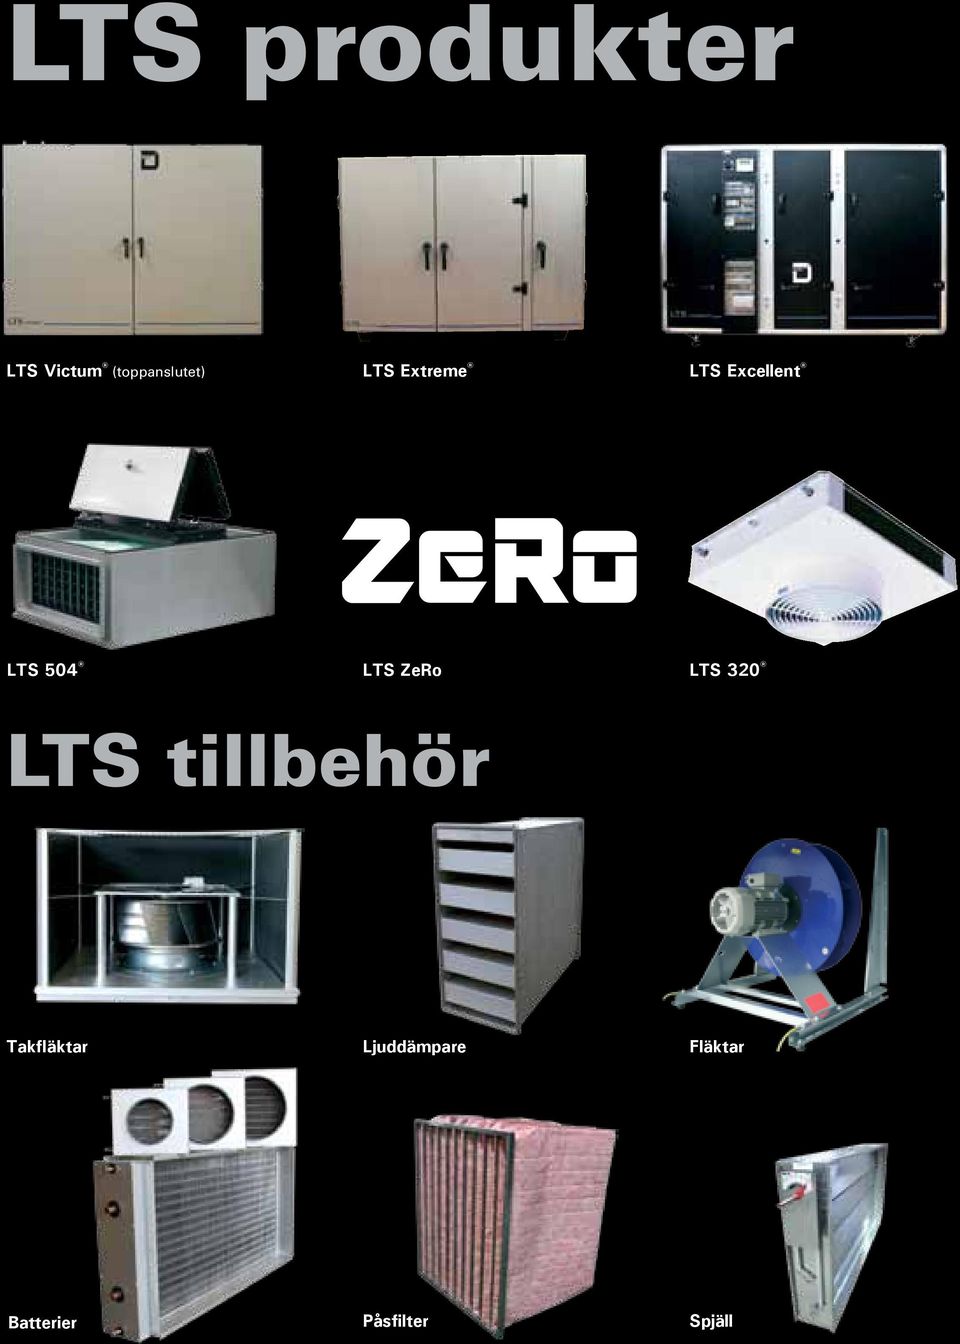 ZeRo LTS 320 LTS tillbehör Takfläktar